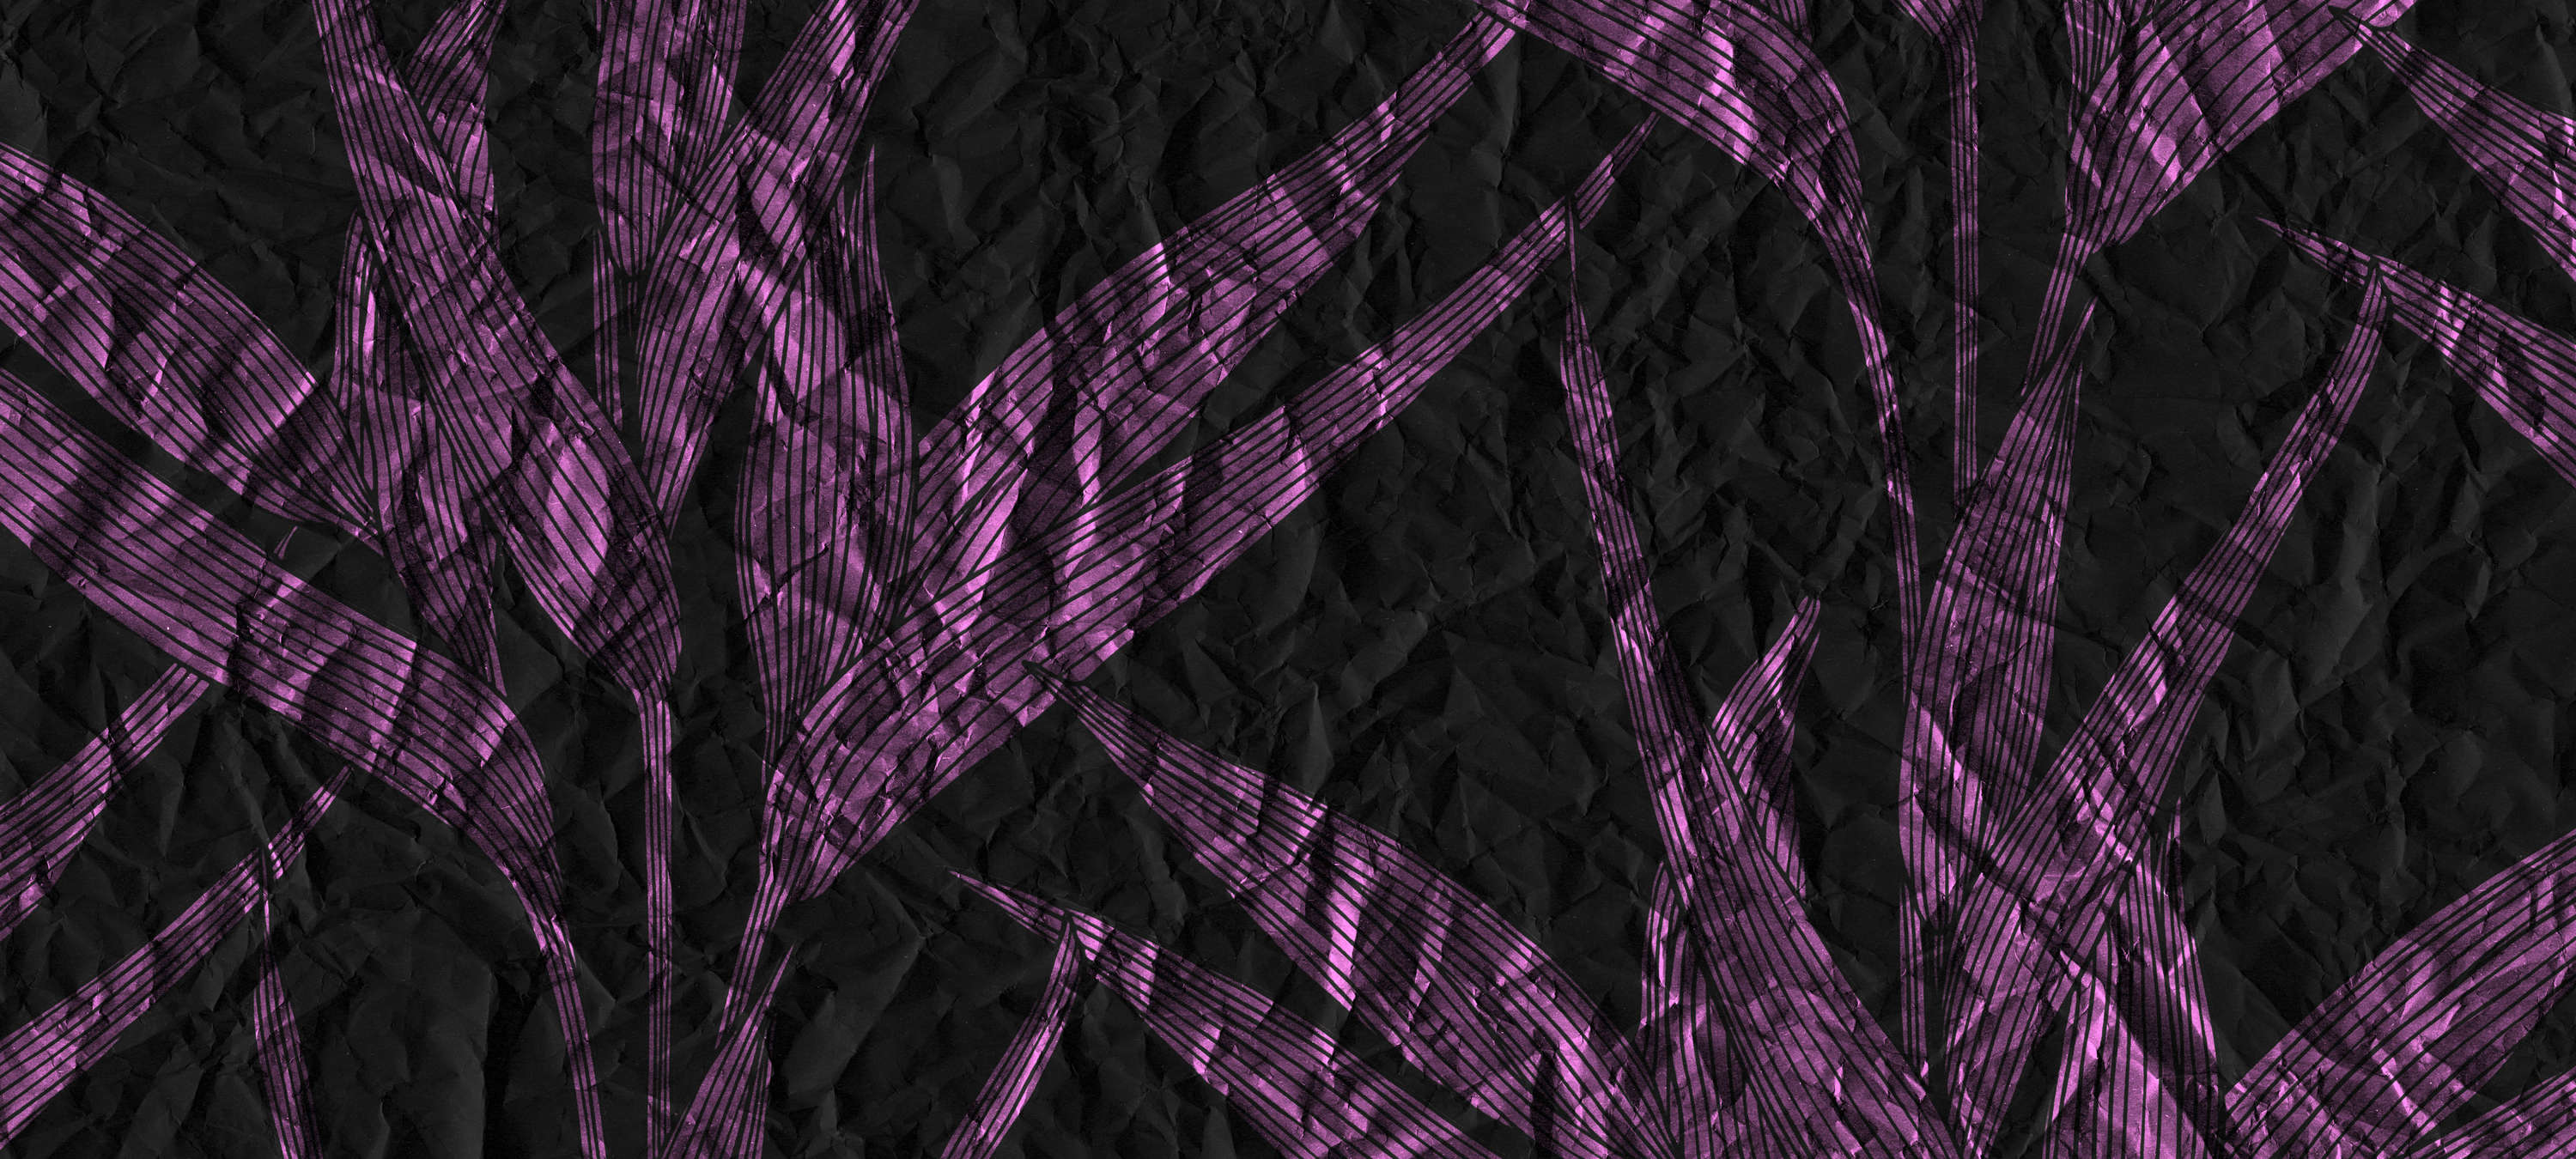             Dunkle Fototapete Blättern & Papier-Optik – Violett, Schwarz
        